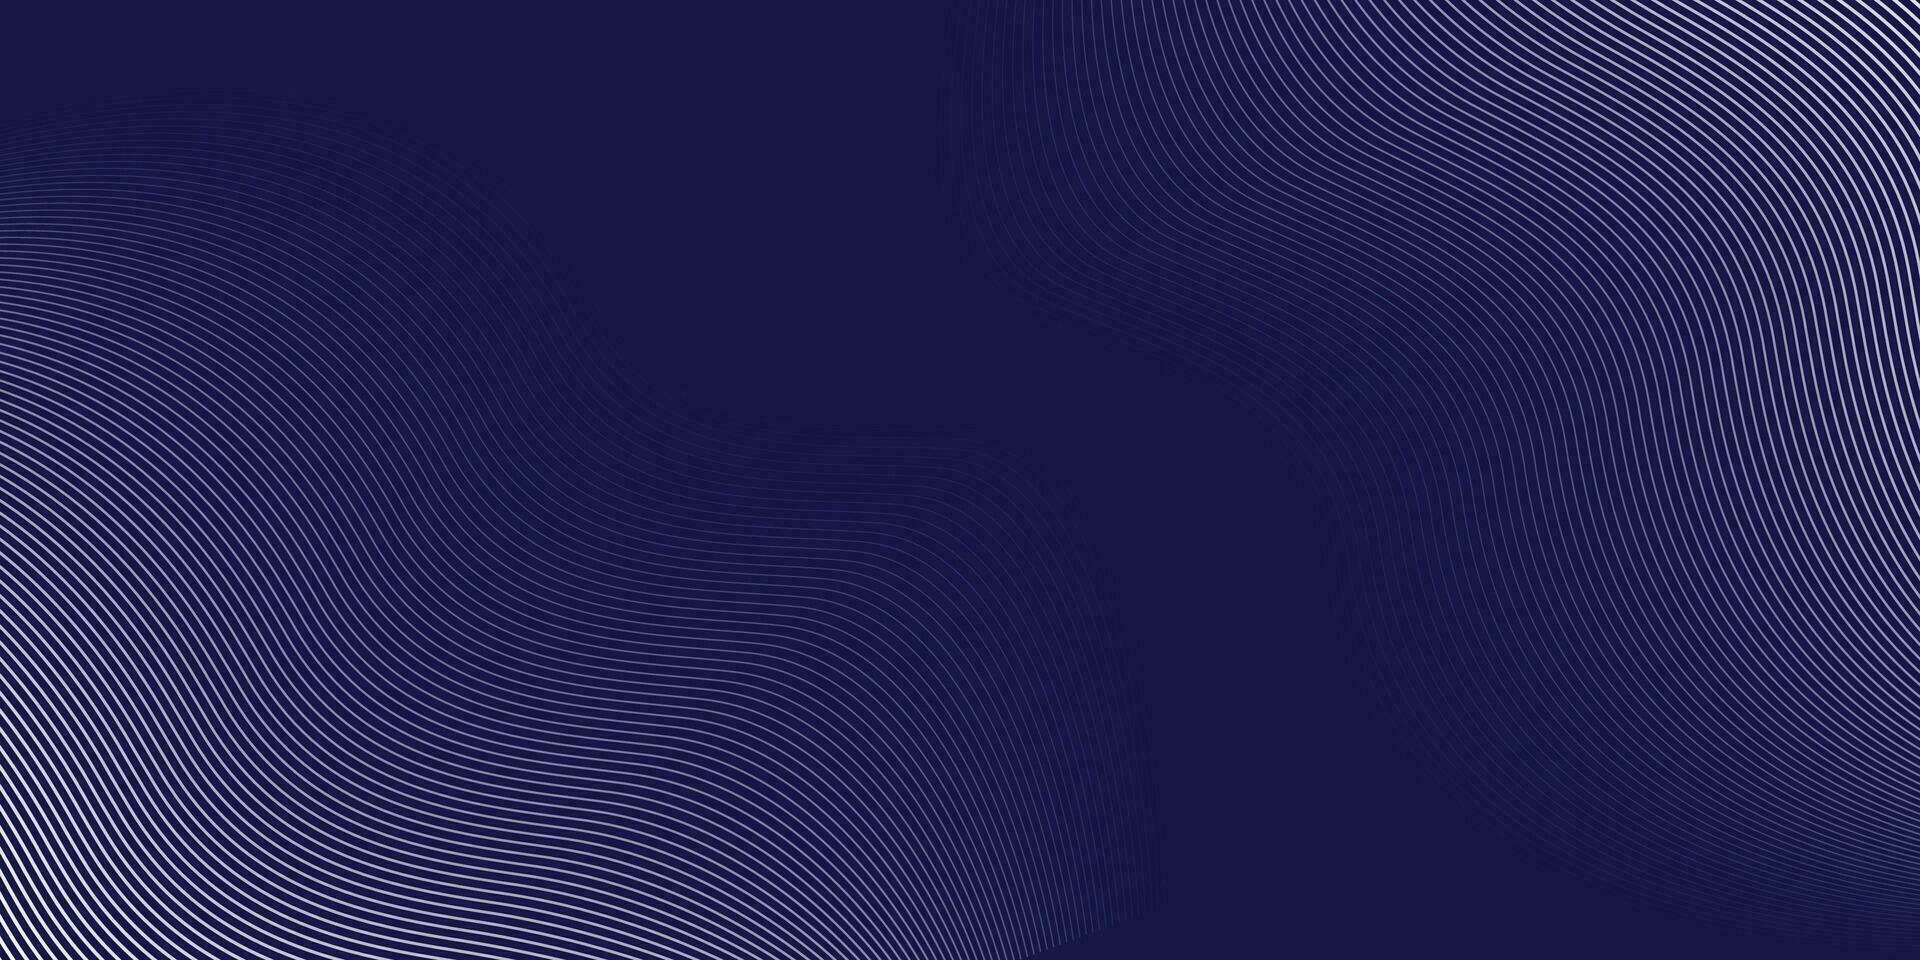 Luxus Hintergrund Design mit diagonal abstrakt Blau Linie Muster im Weiß Farbe. Vektor horizontal Vorlage zum Geschäft Banner, Prämie Einladung, Gutschein, prestigeträchtig Geschenk Zertifikat.